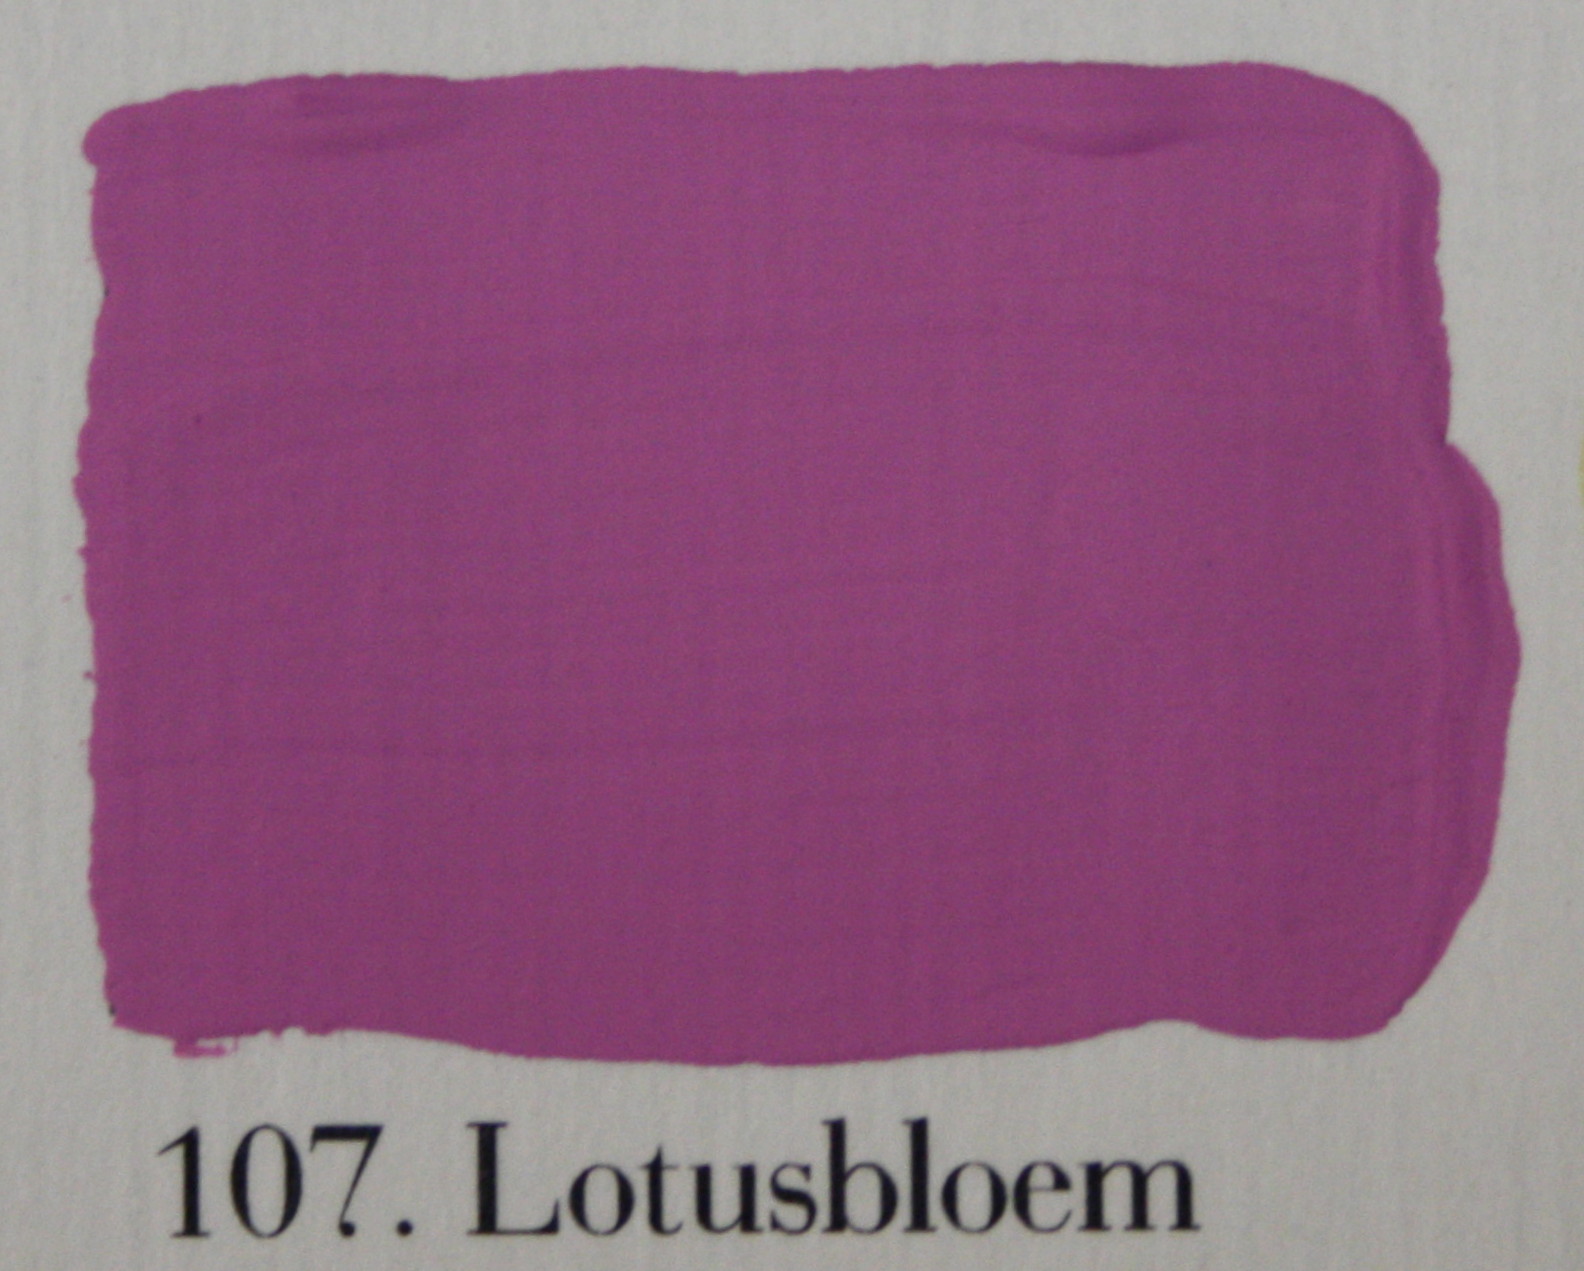 'l Authentique krijtverf 107. Lotusbloem